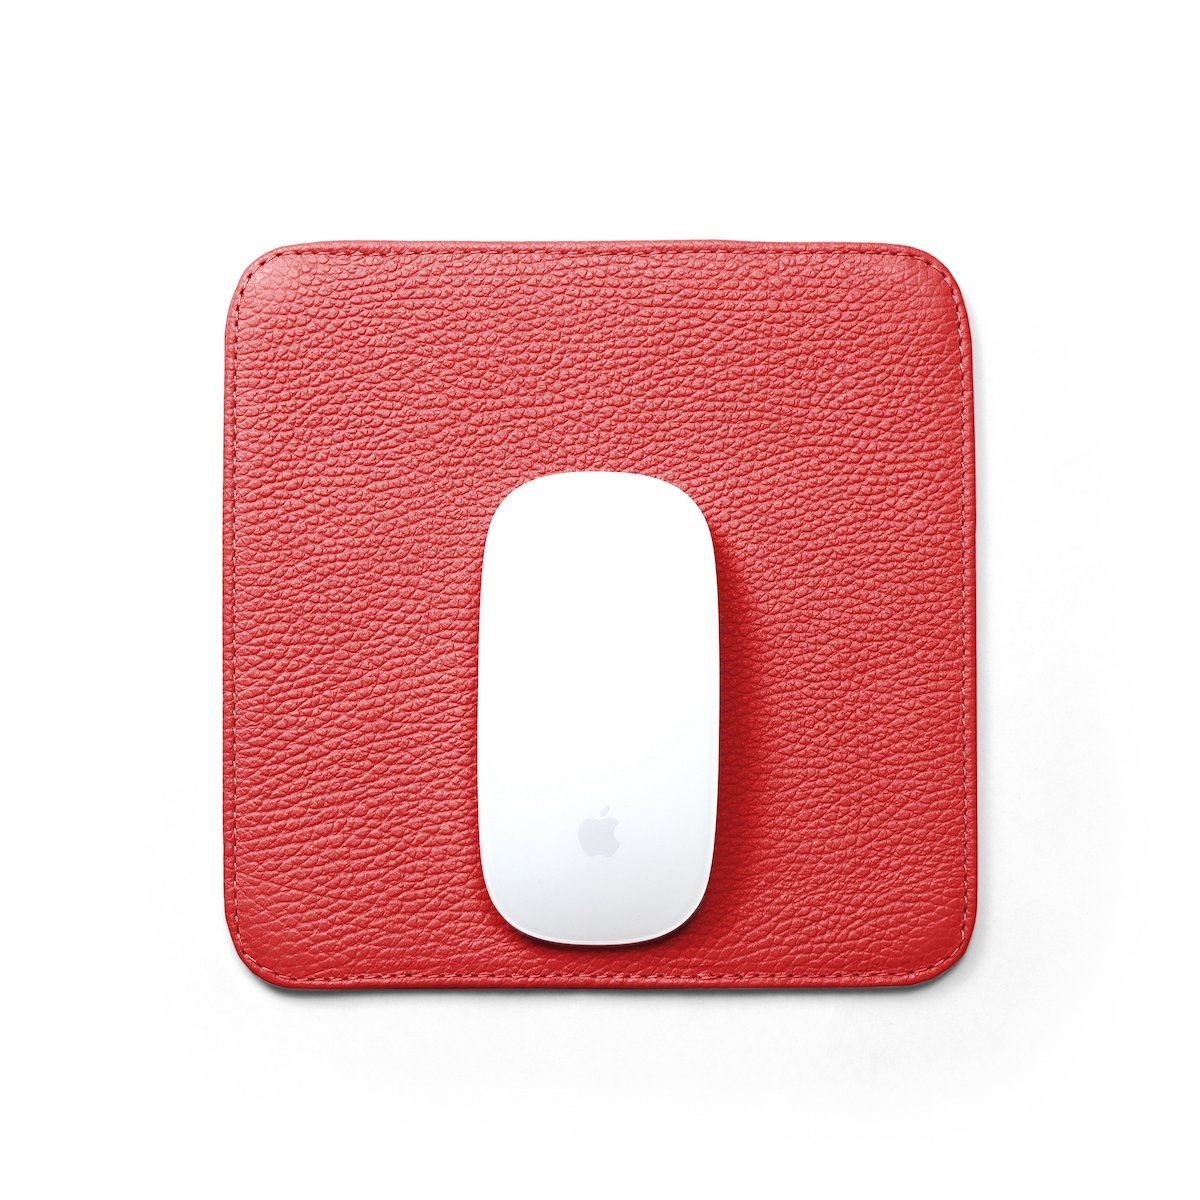 mousepad-square-floater-vermelho-2